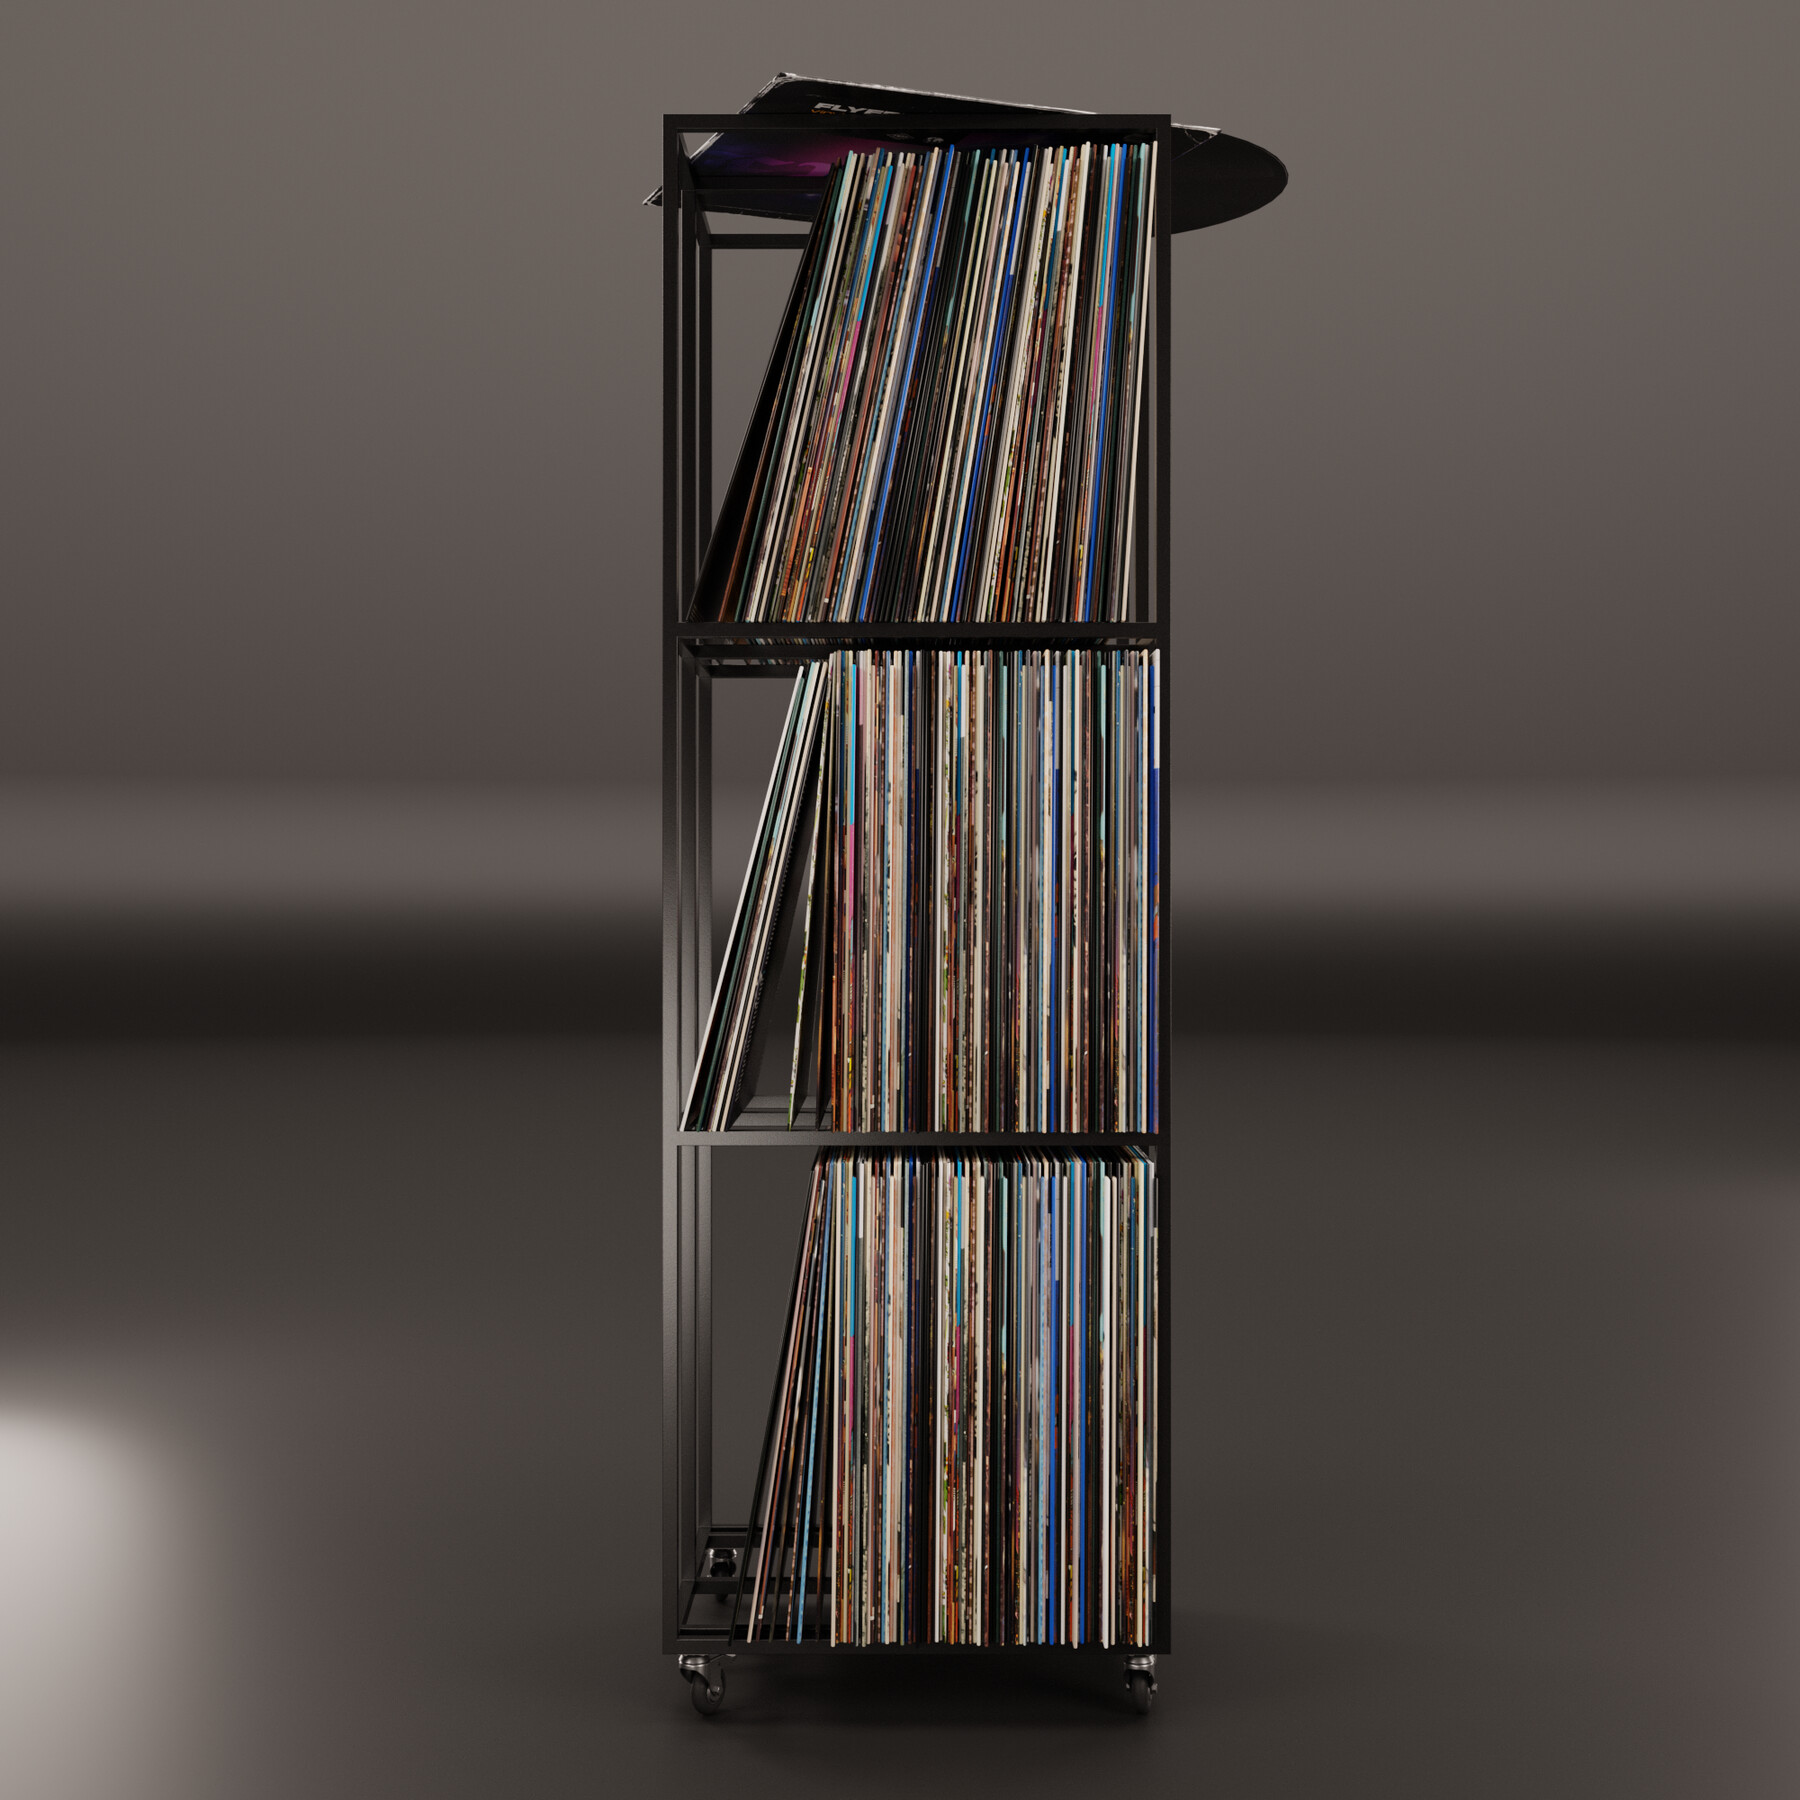 ArtStation - Vinyl Storage No25